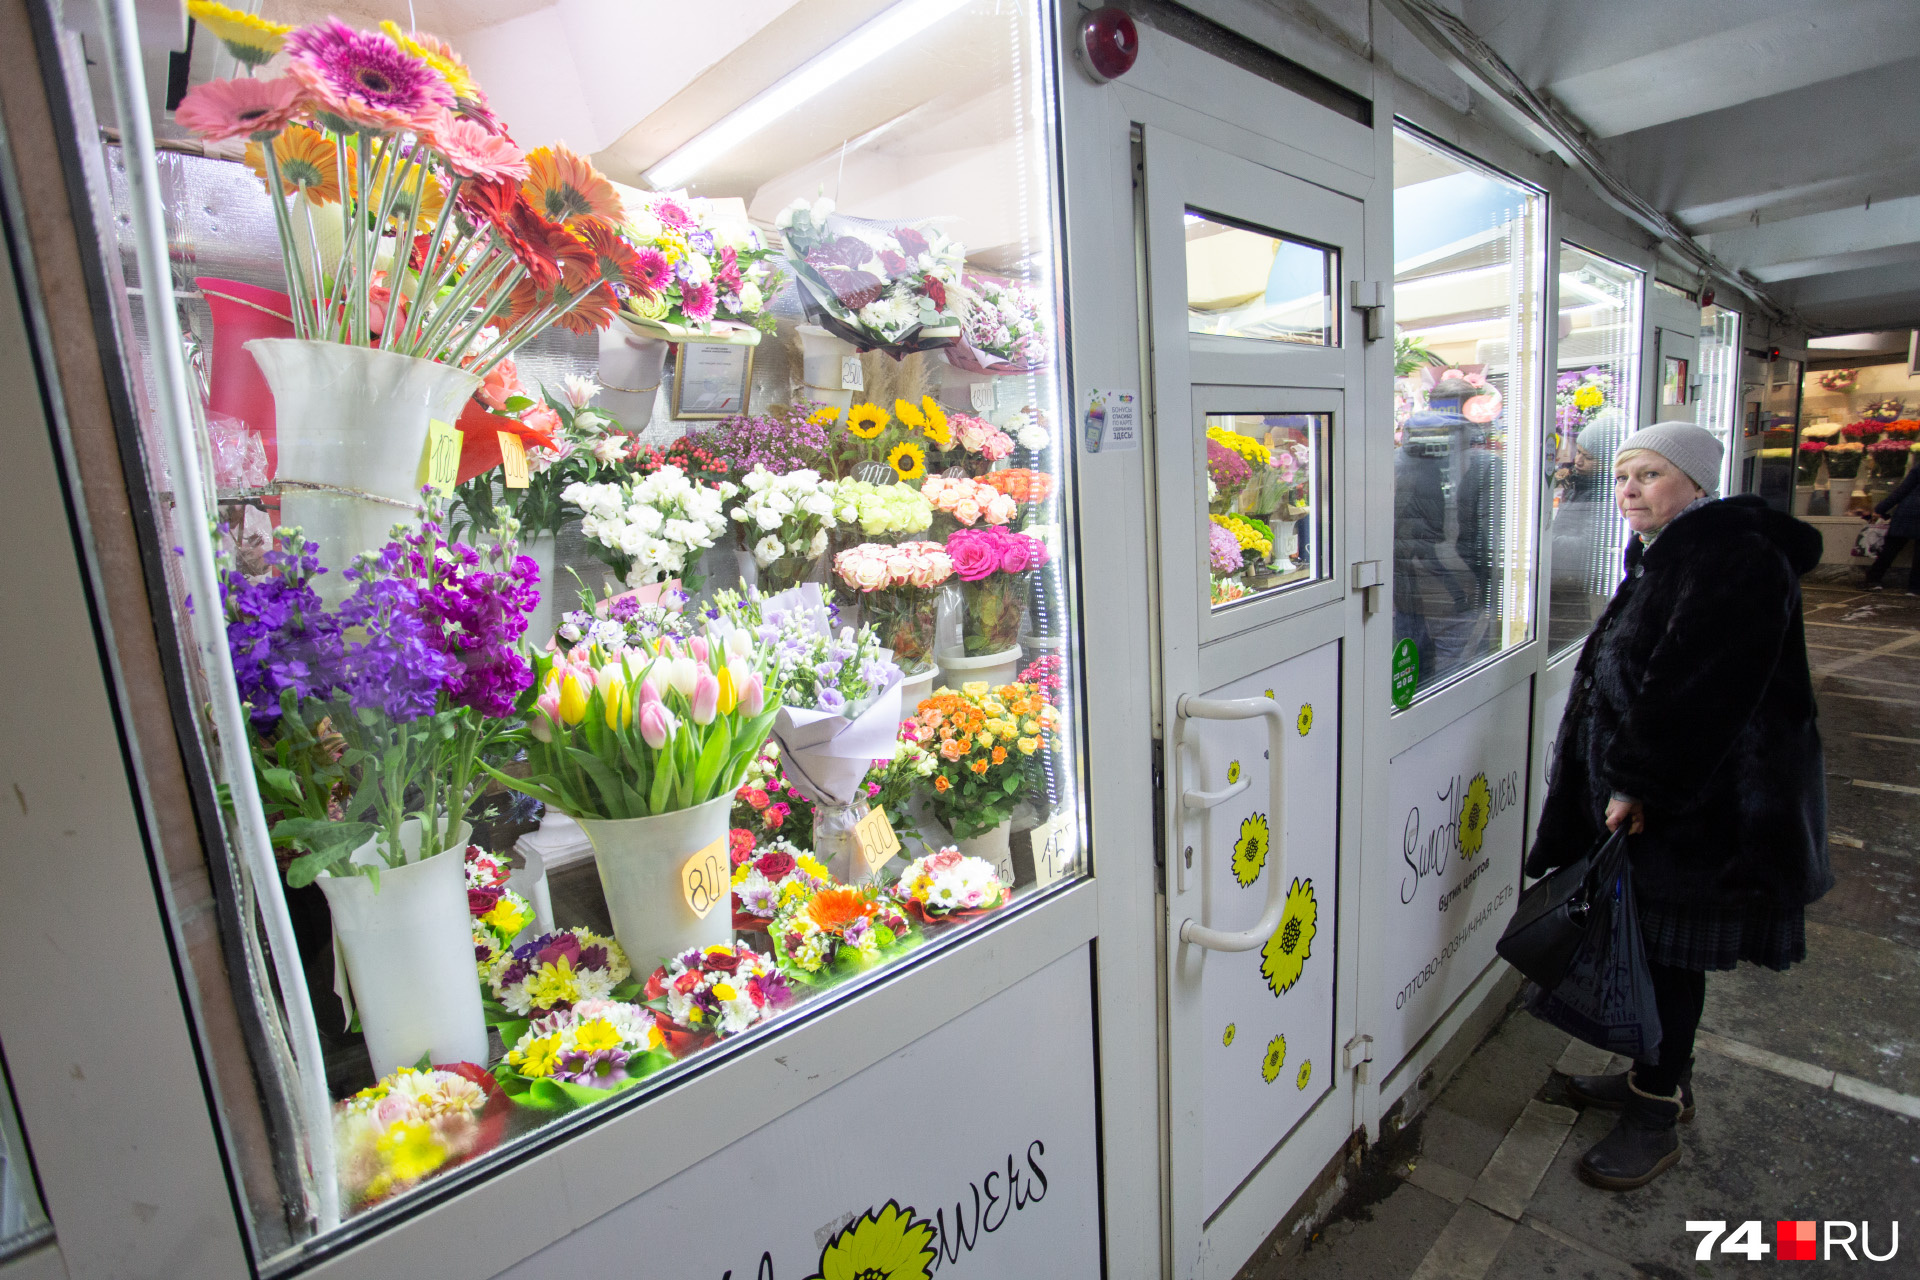 Цветы в Челябинске найти можно в нескольких переходах. Например, на площади Революции, Детском мире или Теплотехе